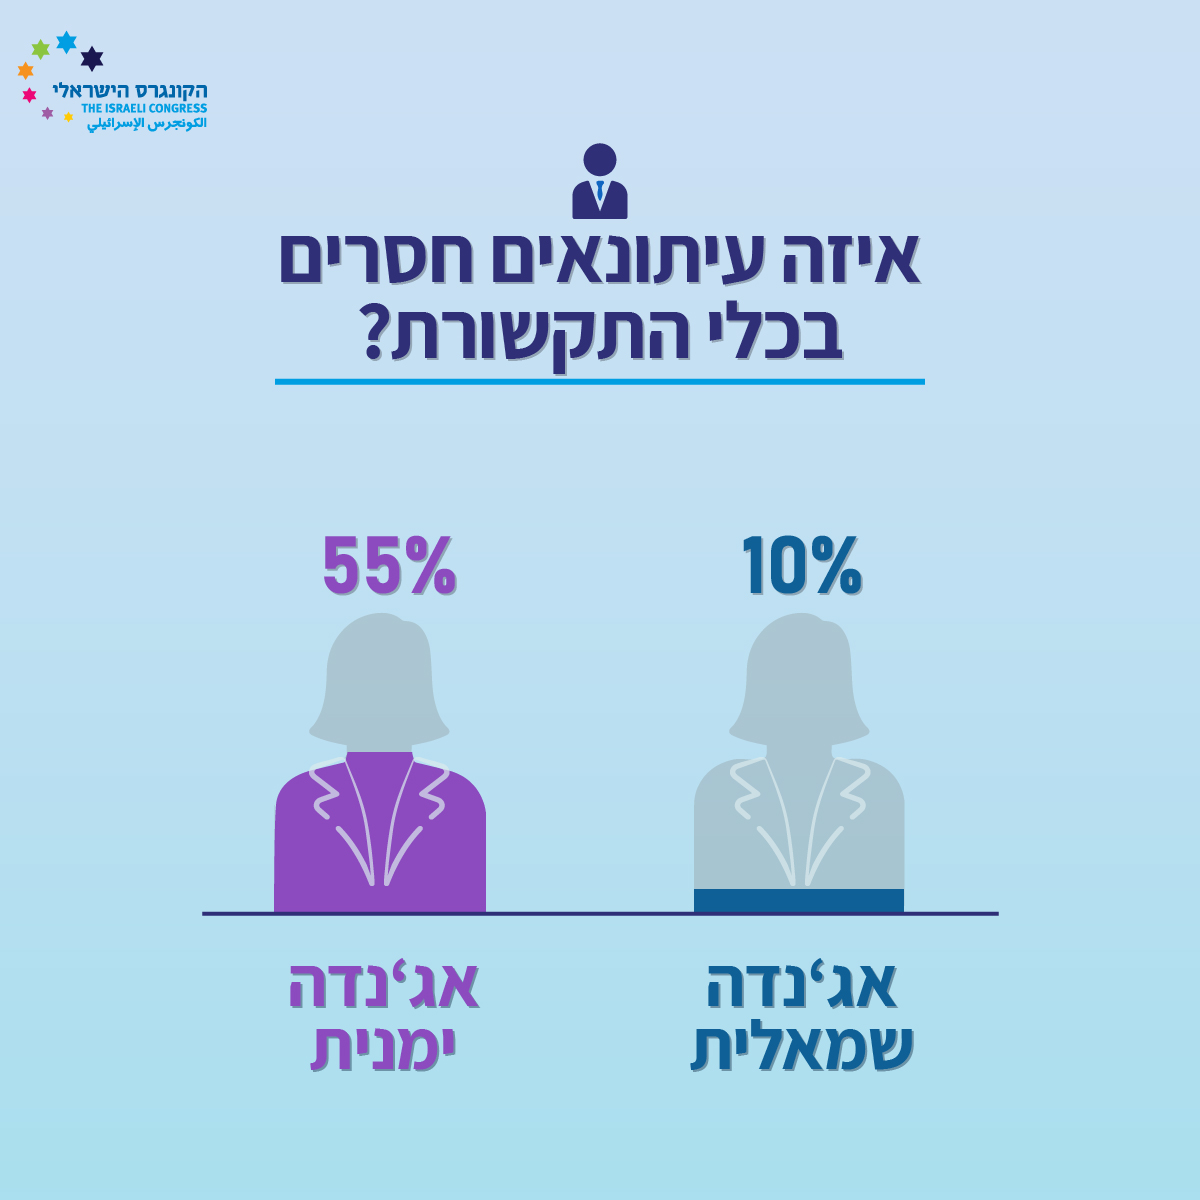 מה חושבים הישראלים על כלי התקשורת שלהם